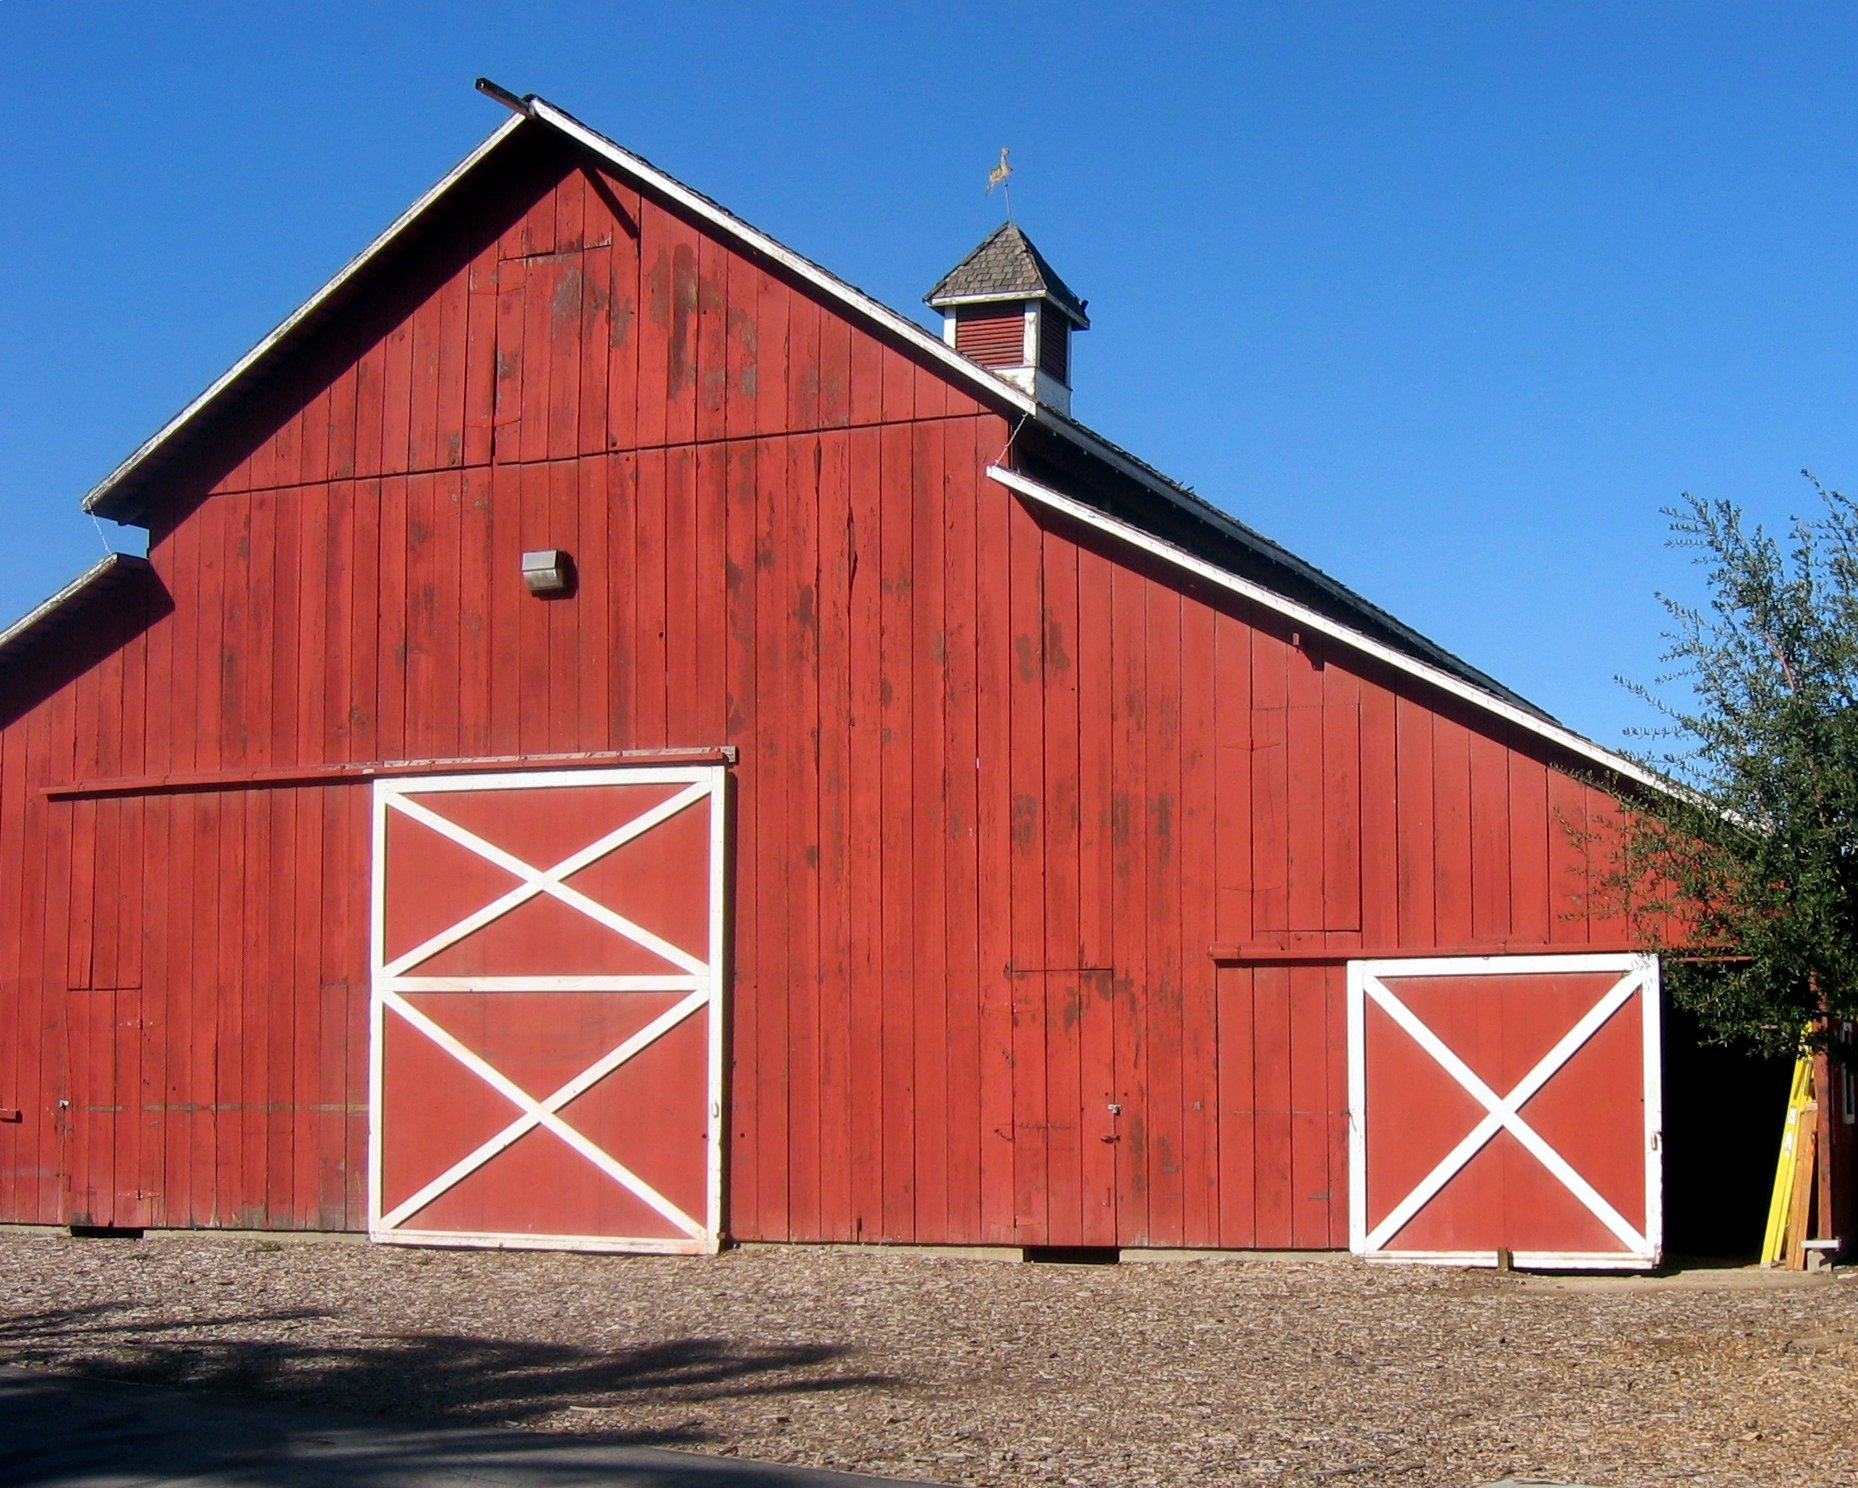 Red Barn at the Camarillo Ranch House